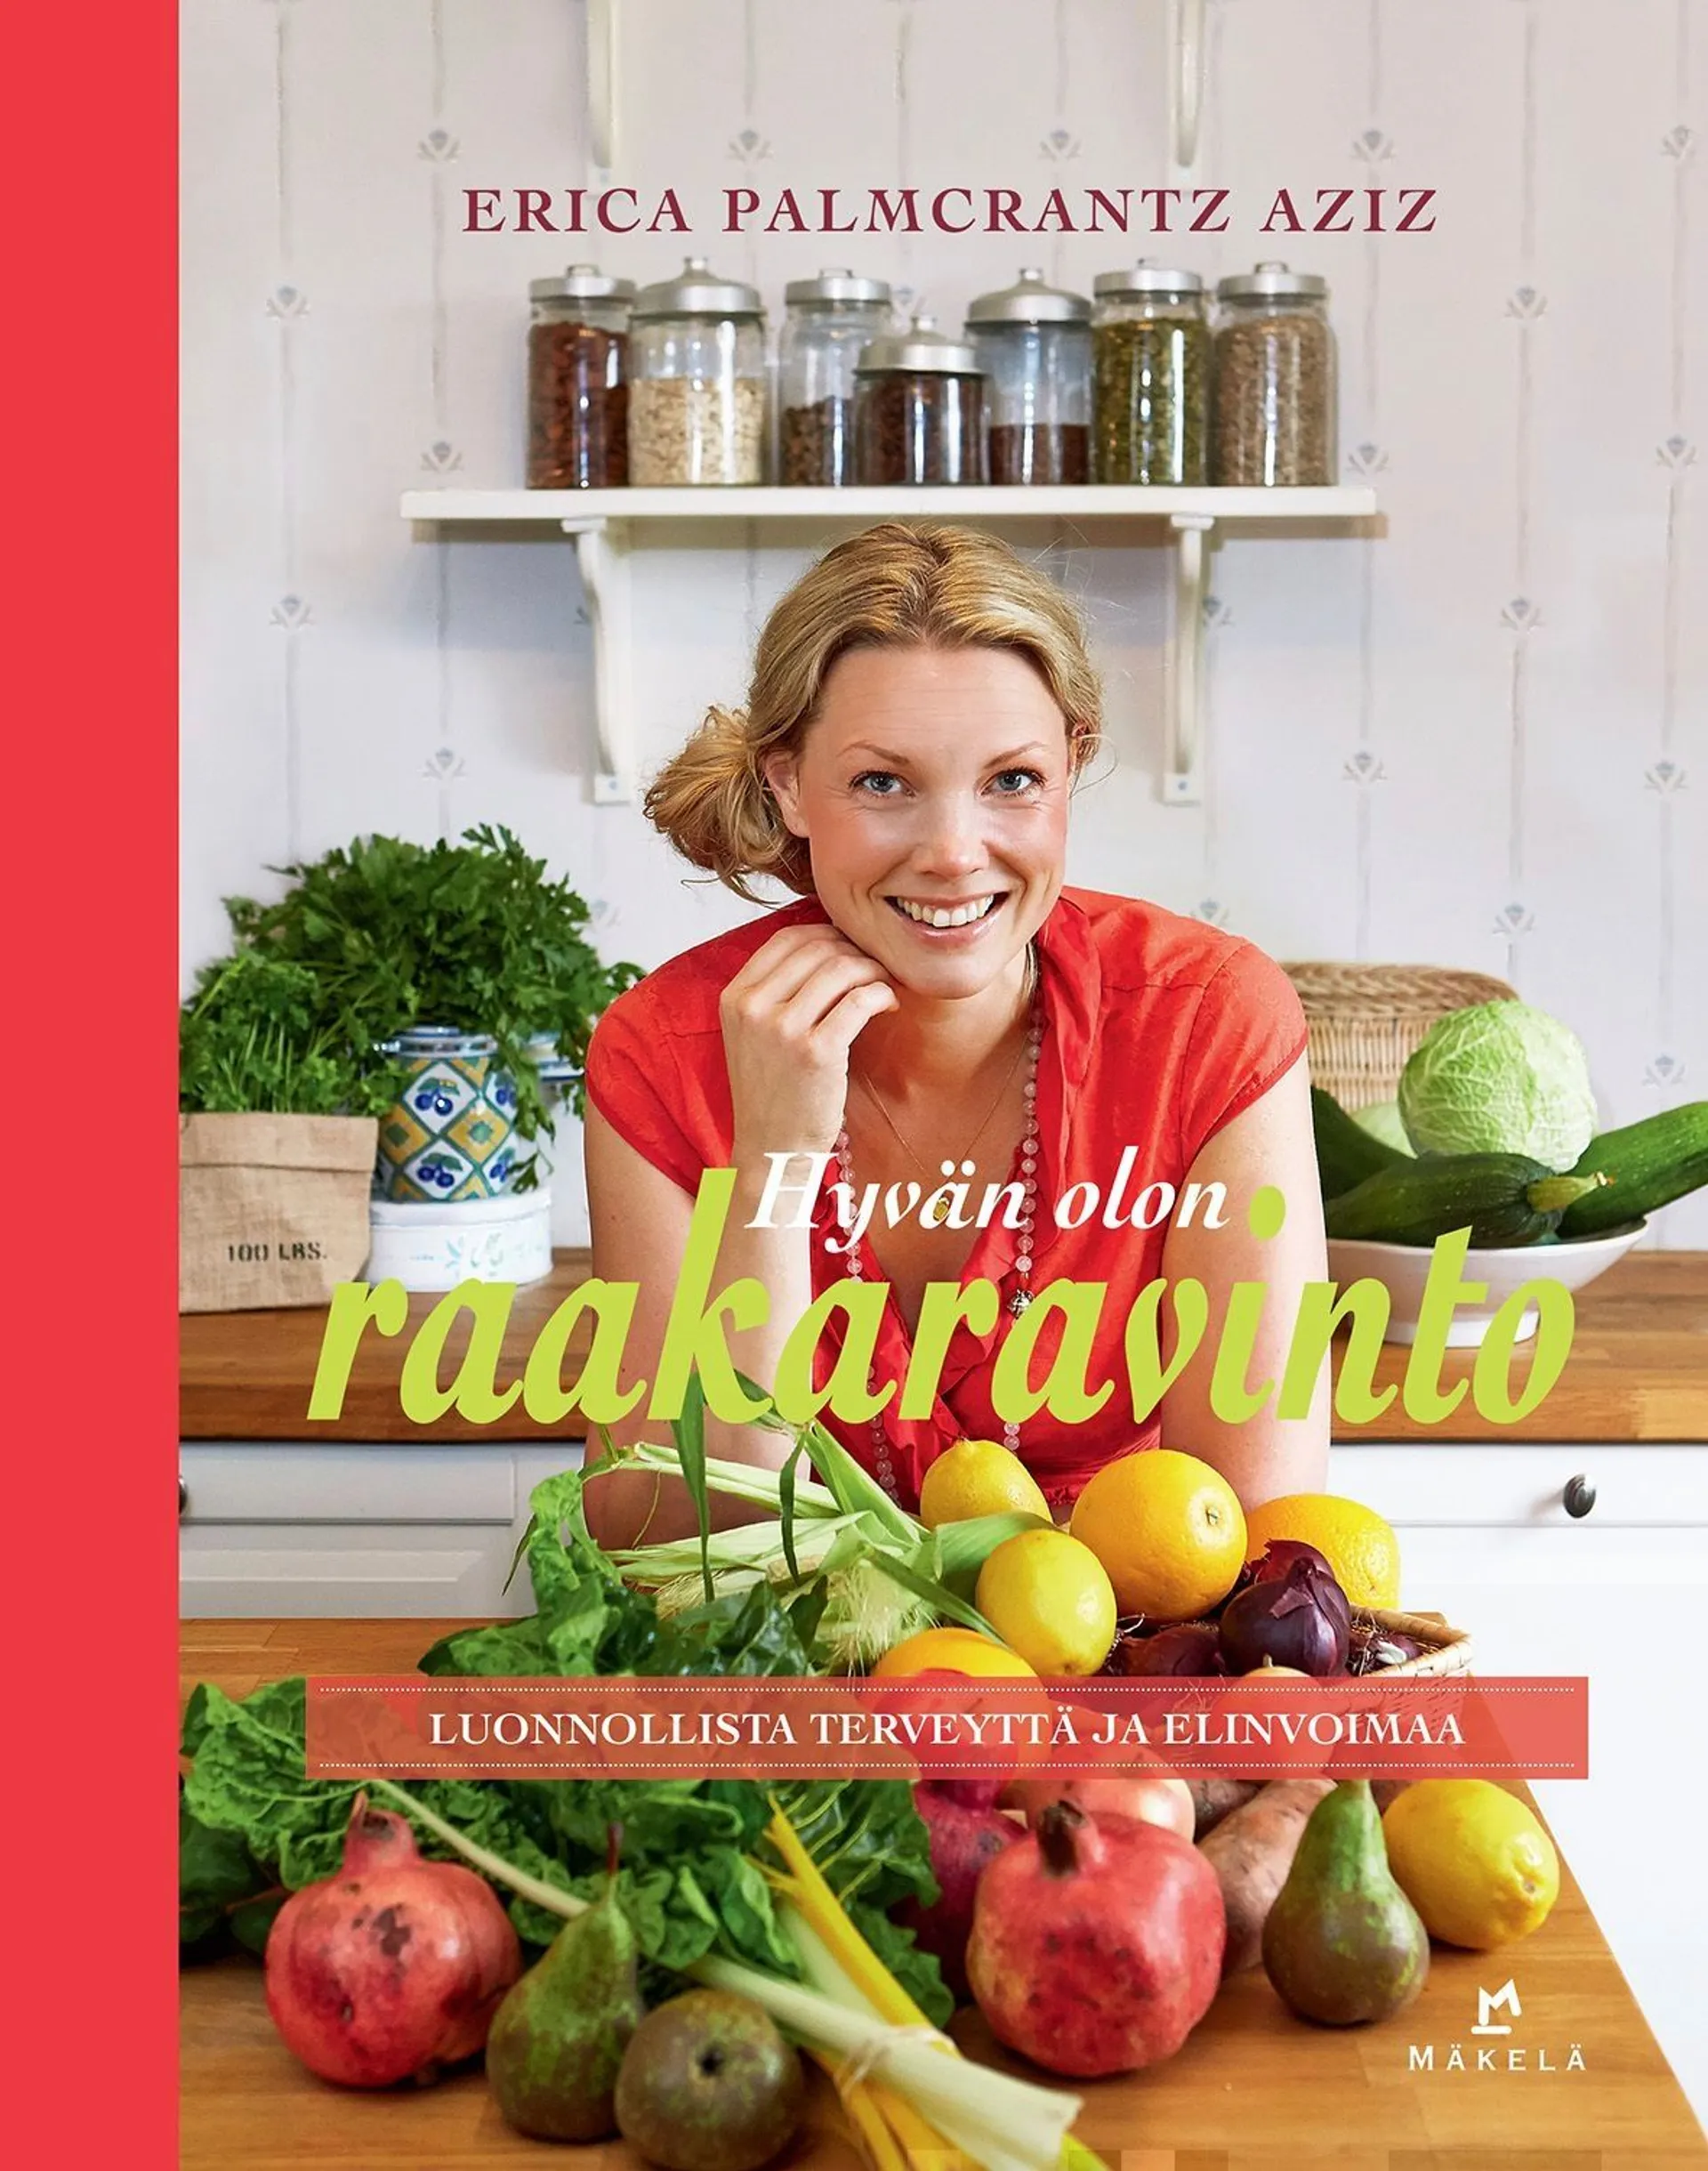 Palmcrantz Aziz, Hyvän olon raakaravinto - Luonnollista terveyttä ja elinvoimaa